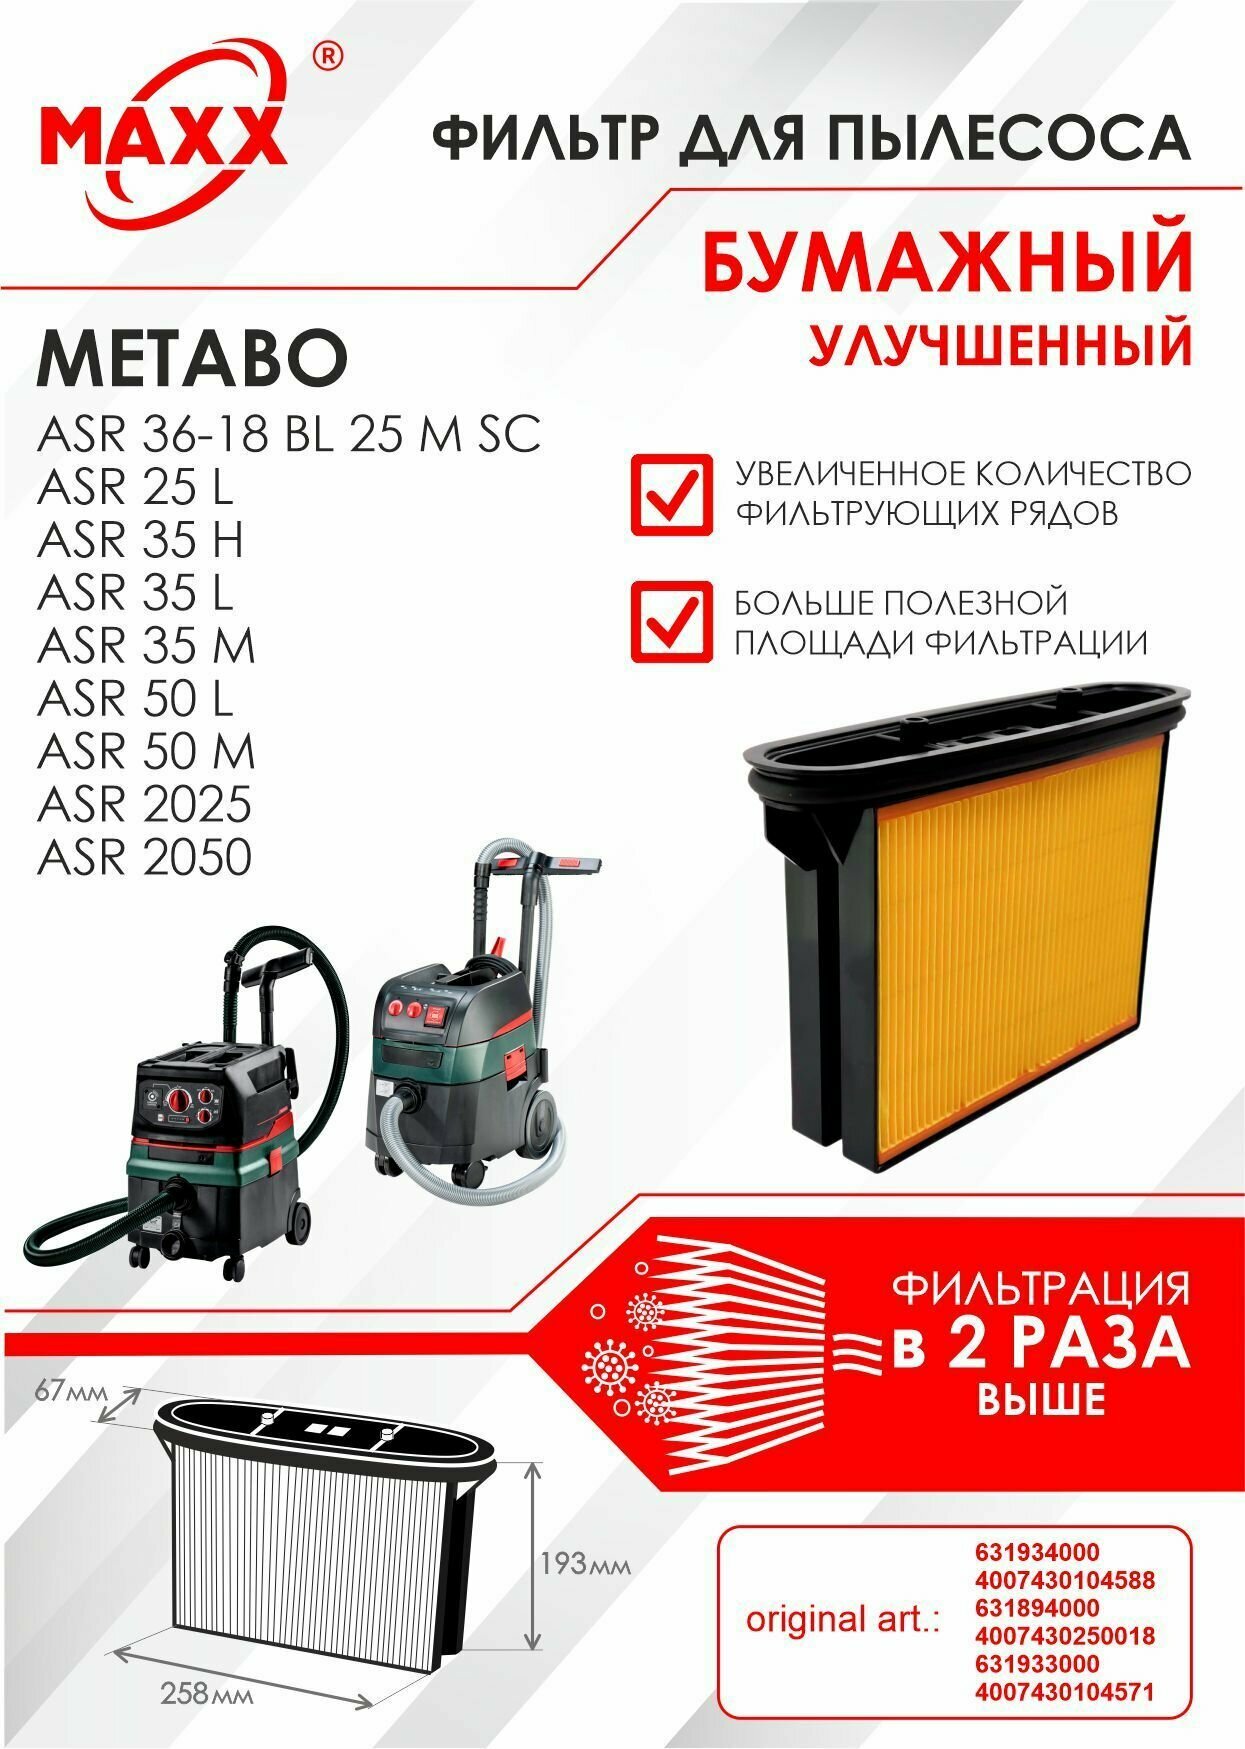 Фильтр складчатый бумажный улучшенный для пылесоса Metabo ASR 25 35 50 2025 2050 Metabo ASR 36-18 BL 25 M SC